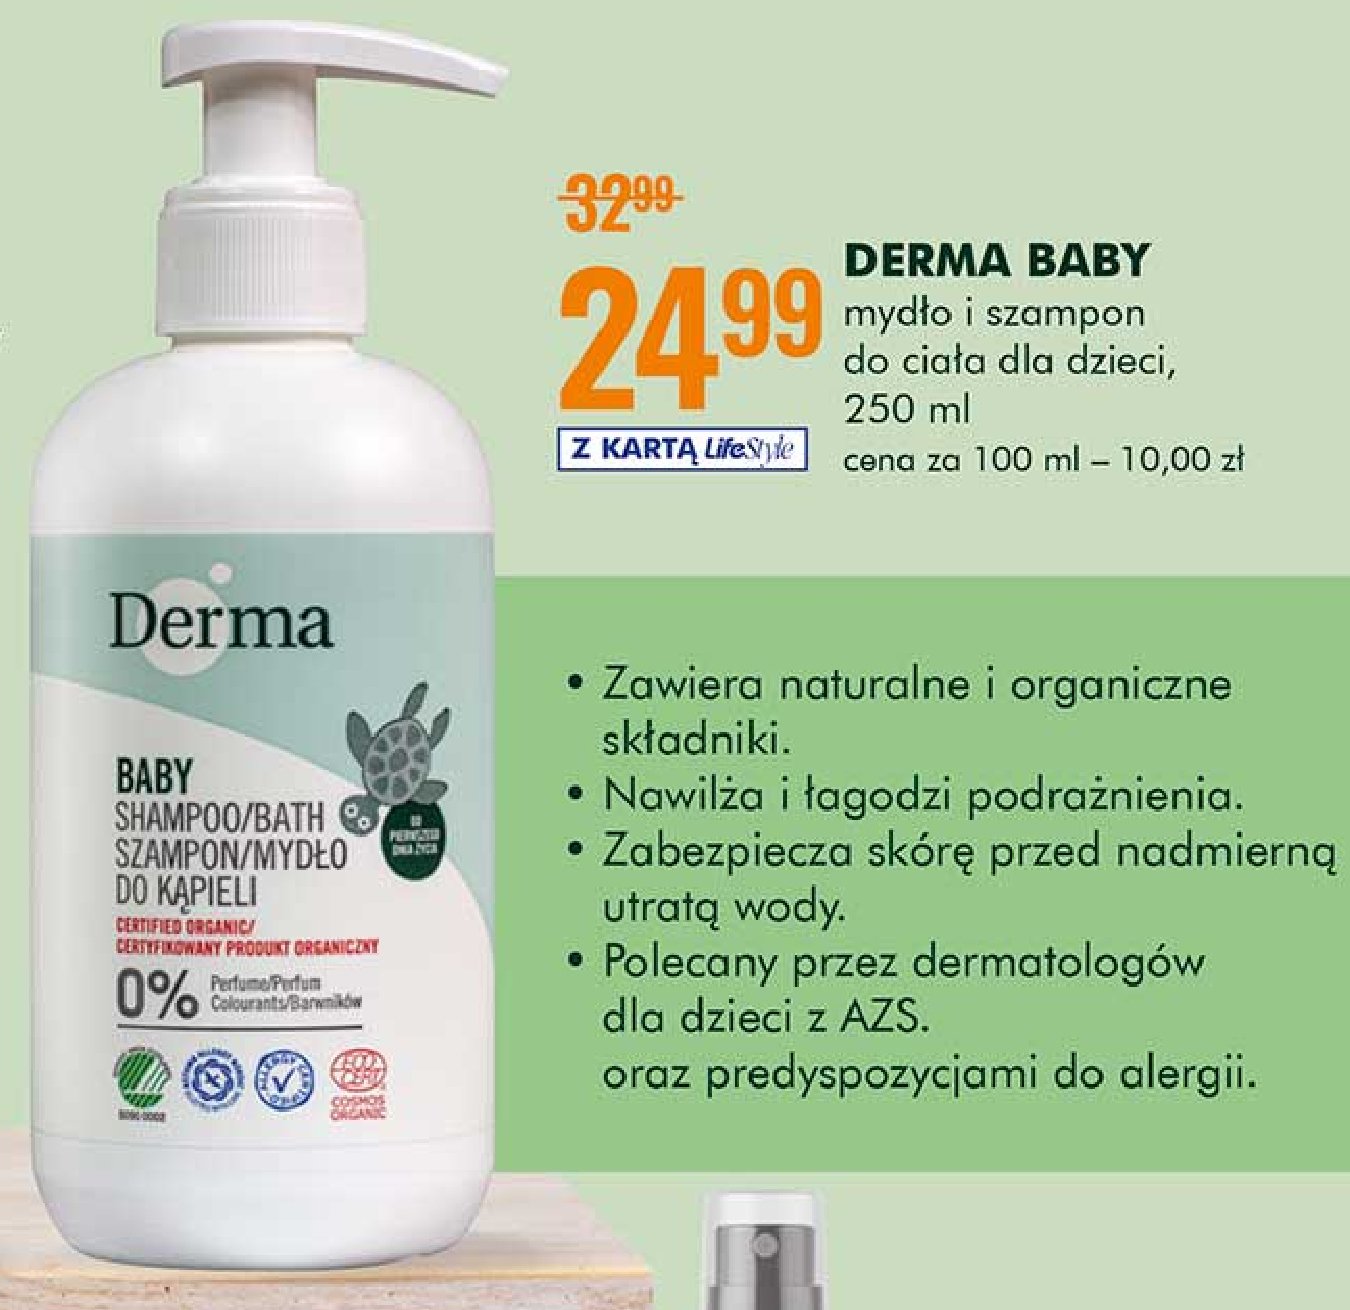 Szampon i mydło do kąpieli Derma eco baby promocja